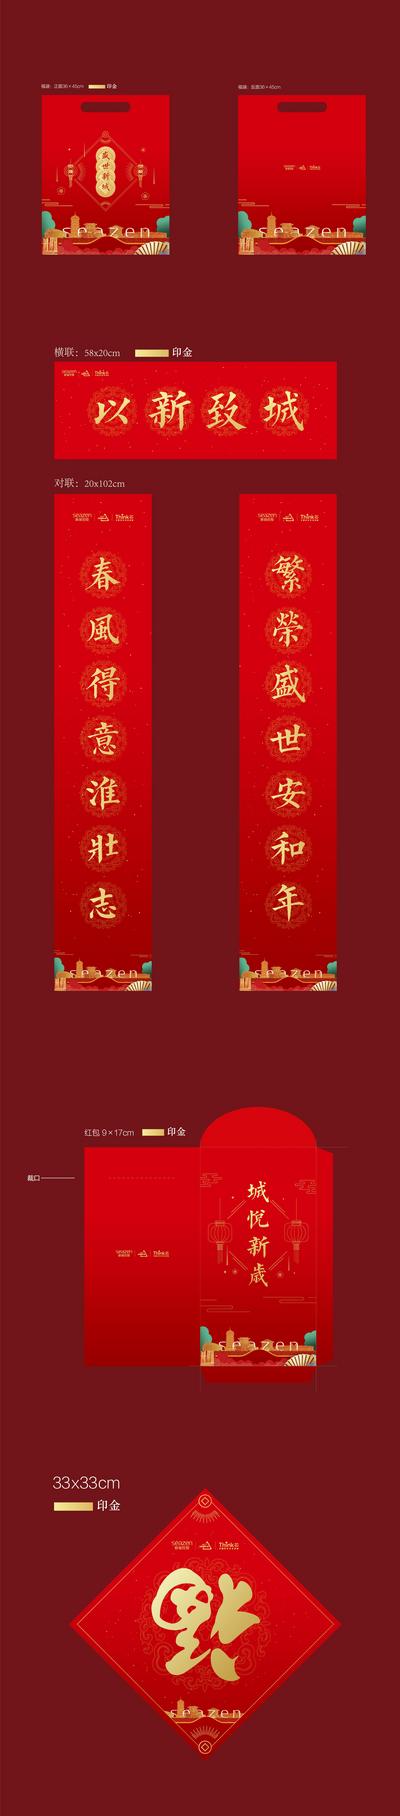 南门网 春联 对联 中国传统节日 春节 福字 红包 福袋 红金